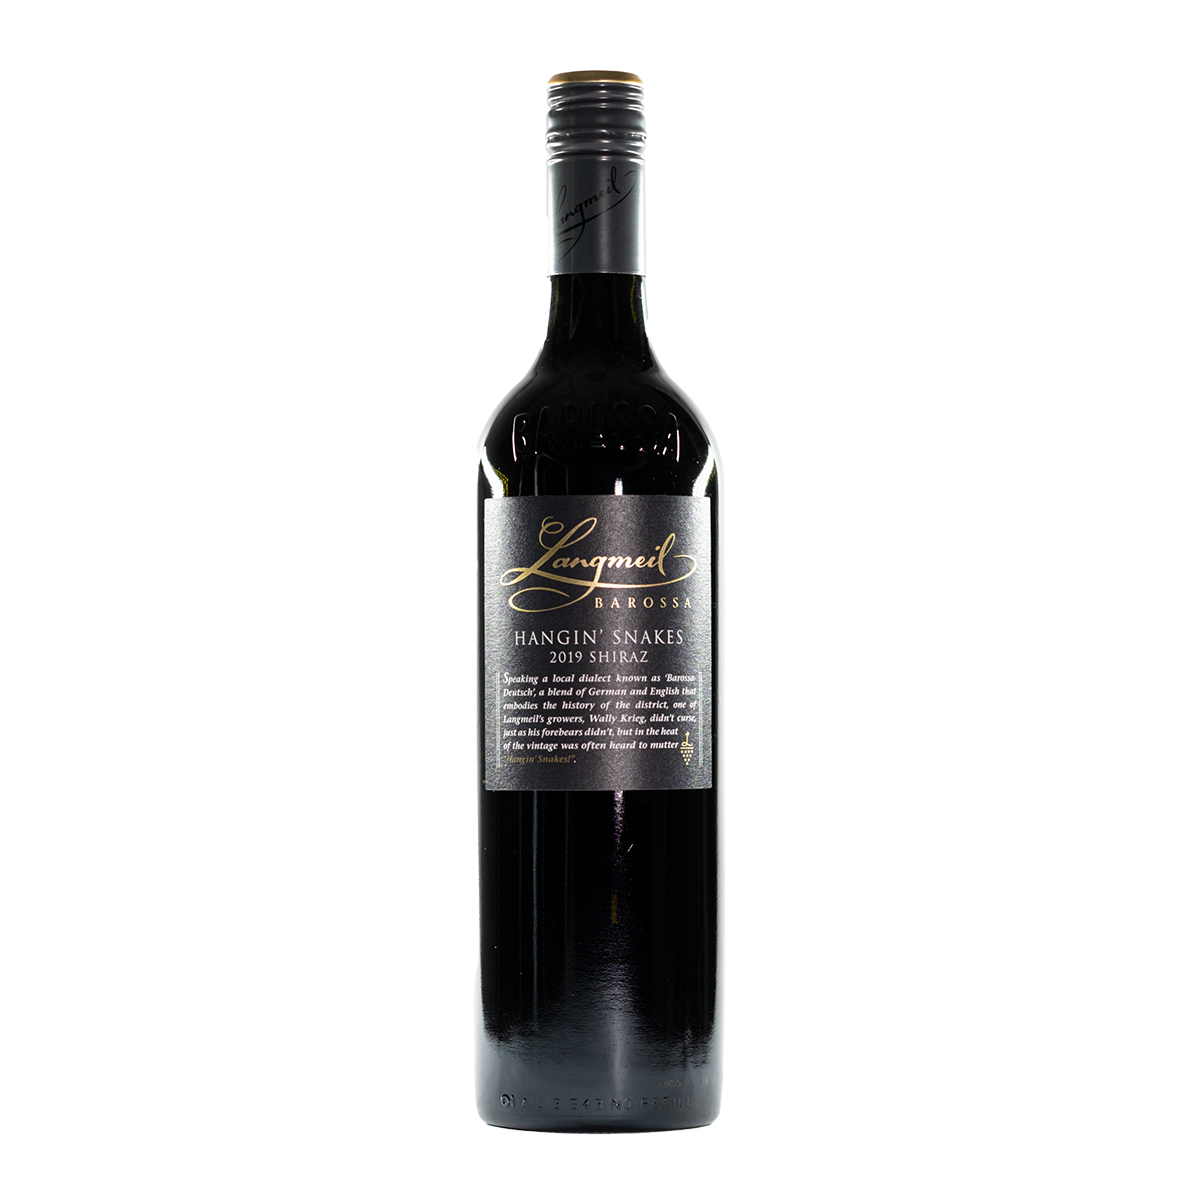 Floor Shiraz | NIKO 2018 - Floor Shiraz | NIKO 2018 là một loại rượu vang tuyệt vời với hương thơm đặc trưng của nho Shiraz. Tạo ra một sự kết hợp tuyệt vời giữa vị trái cây và gia vị, bạn sẽ không thể nào bỏ qua cơ hội tìm hiểu thêm về loại rượu vang này bằng cách xem hình ảnh của nó.